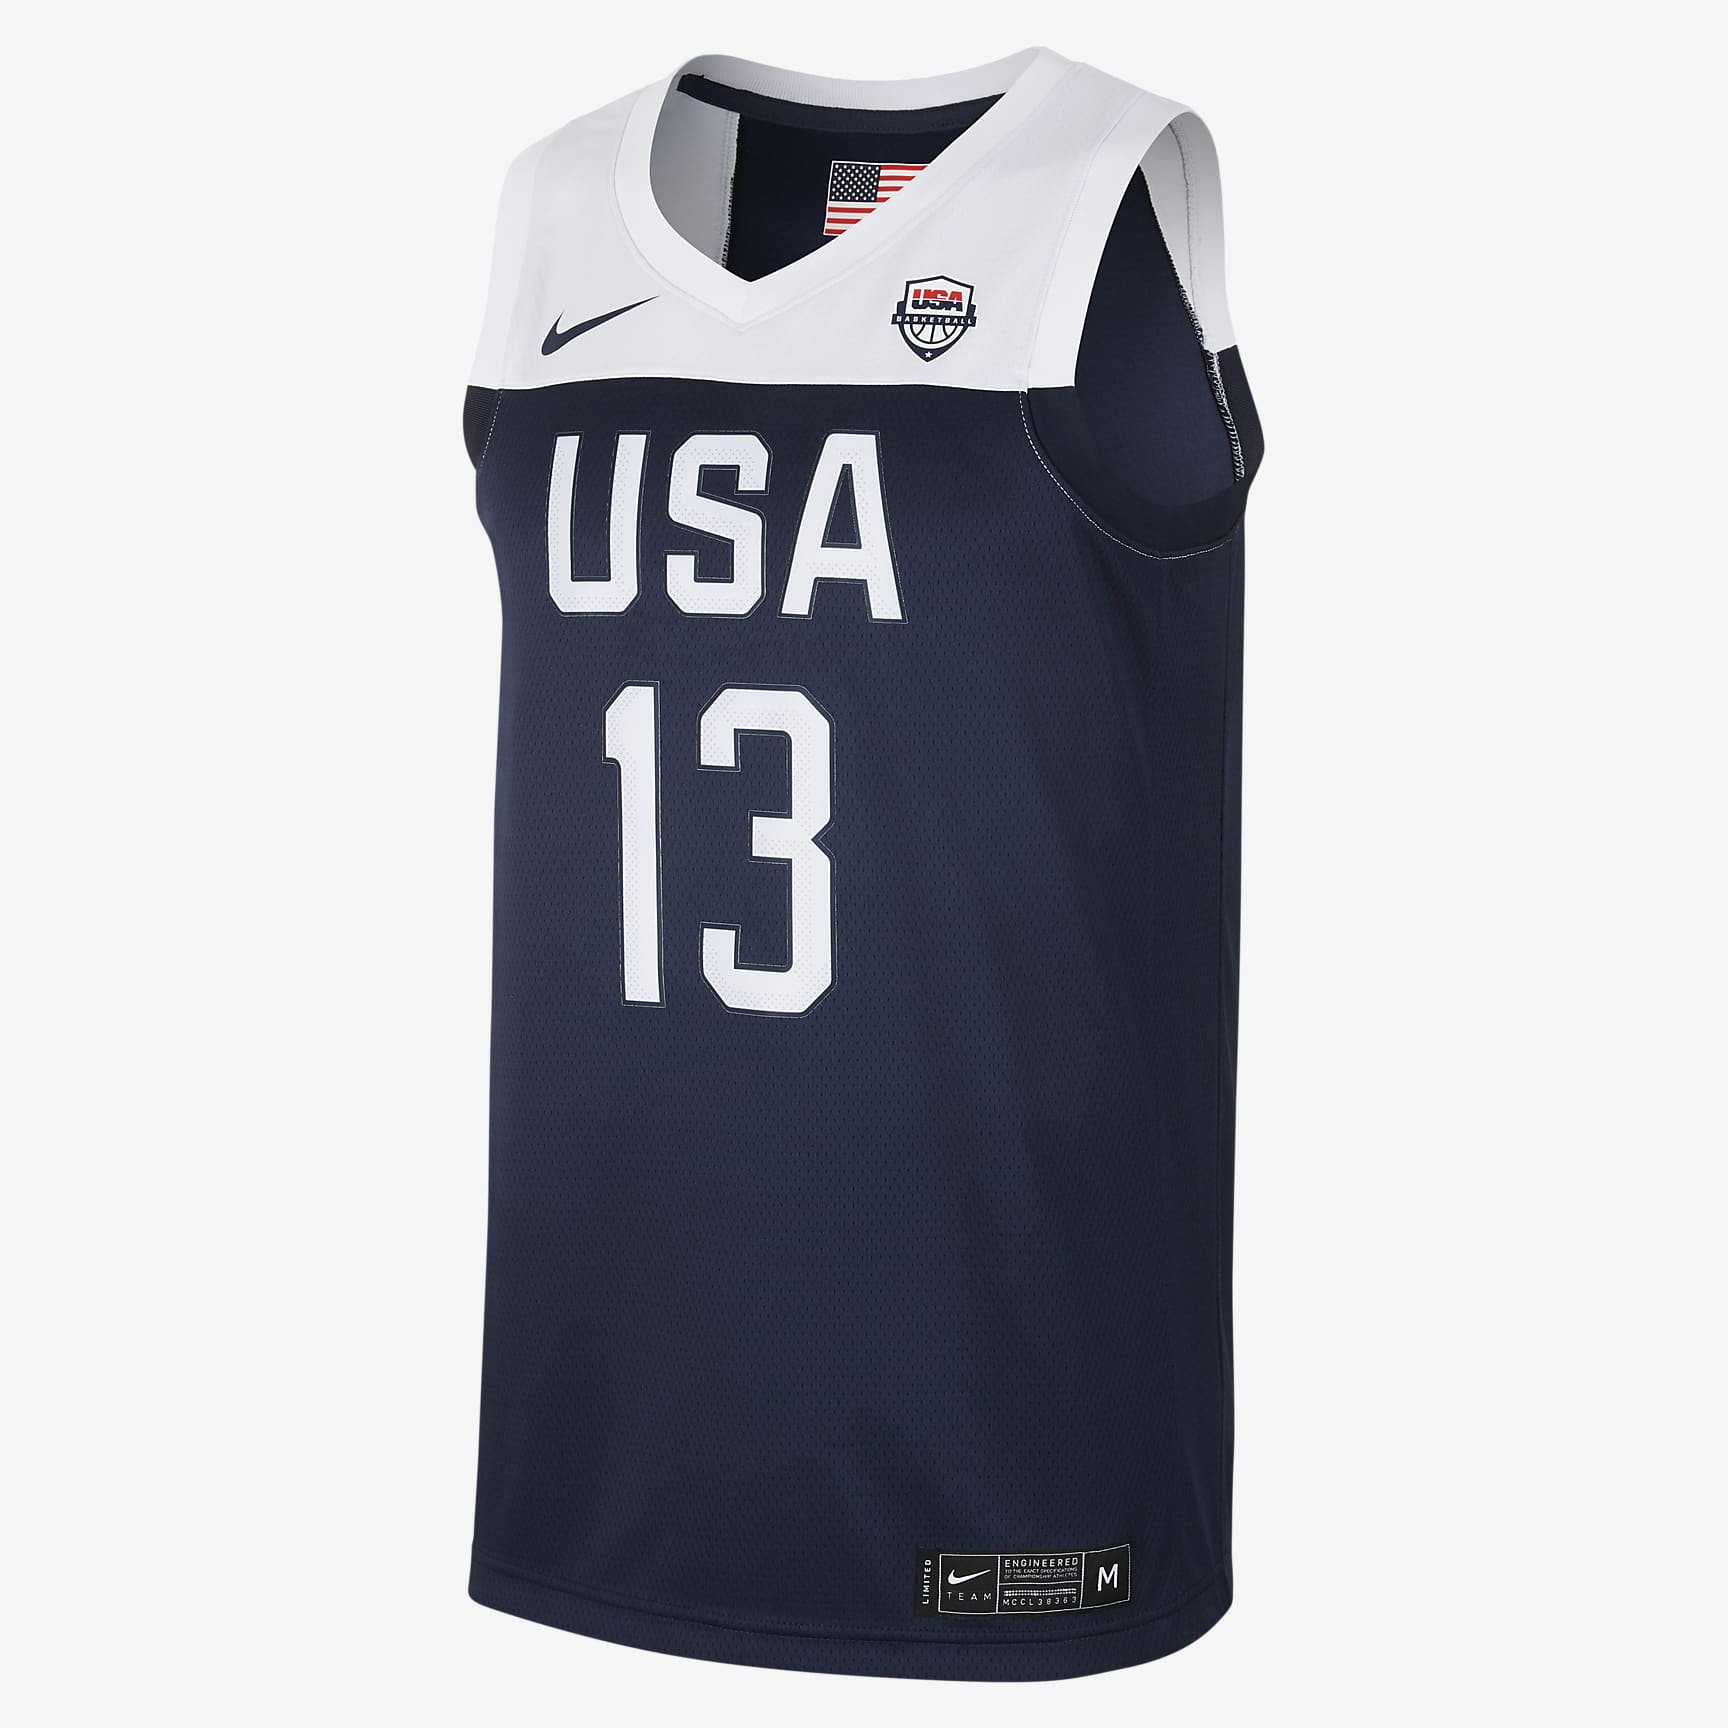 USA Nike (Road) Men's Basketball Jersey. Nike RO